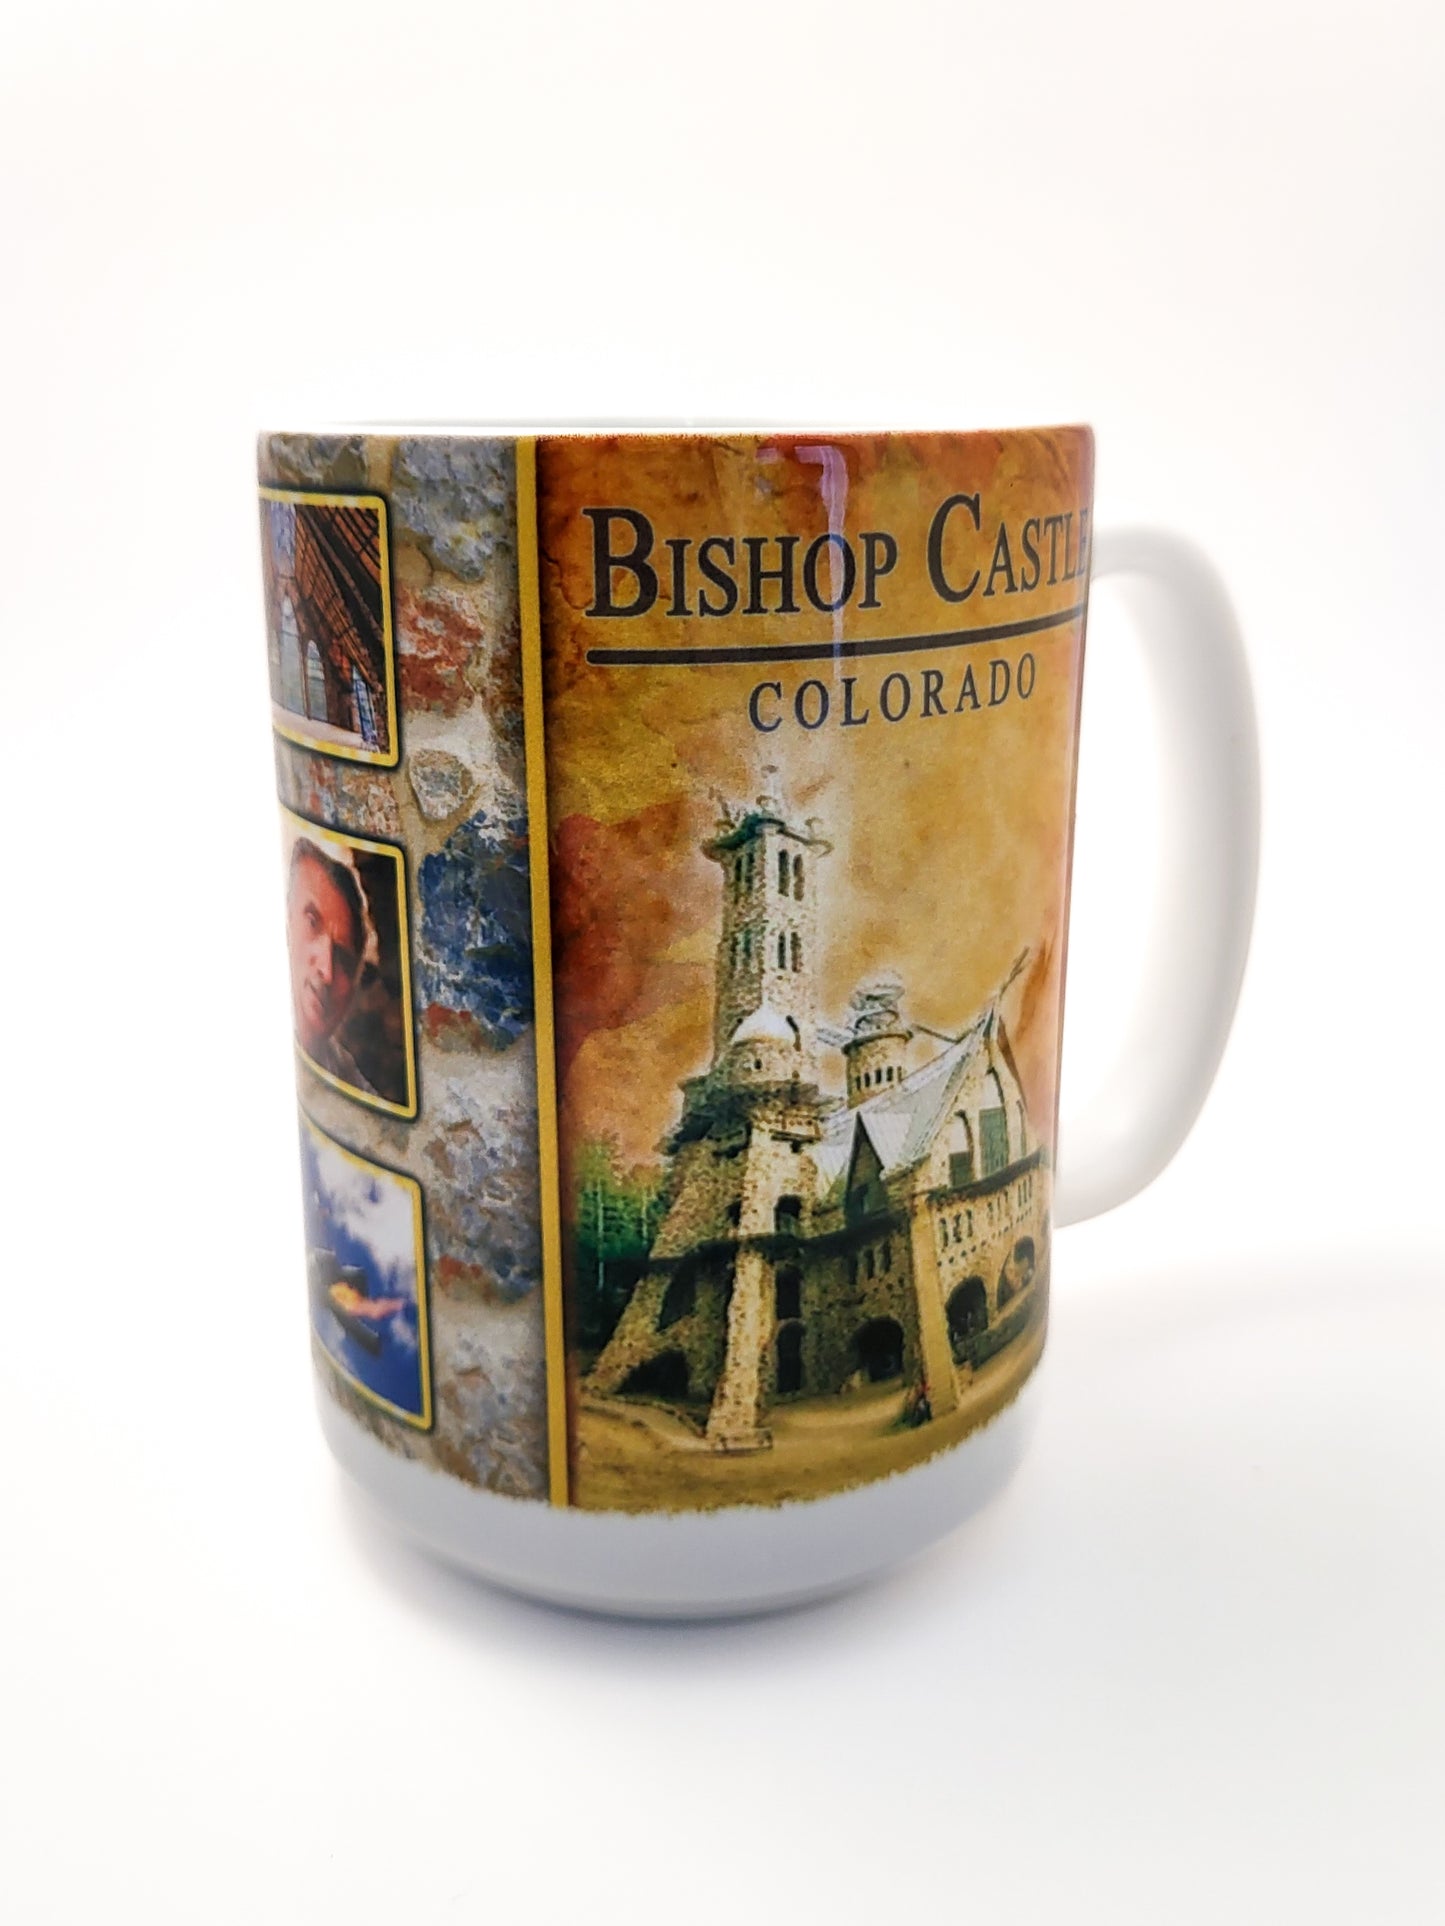 Bishop Castle Mug - 16 oz